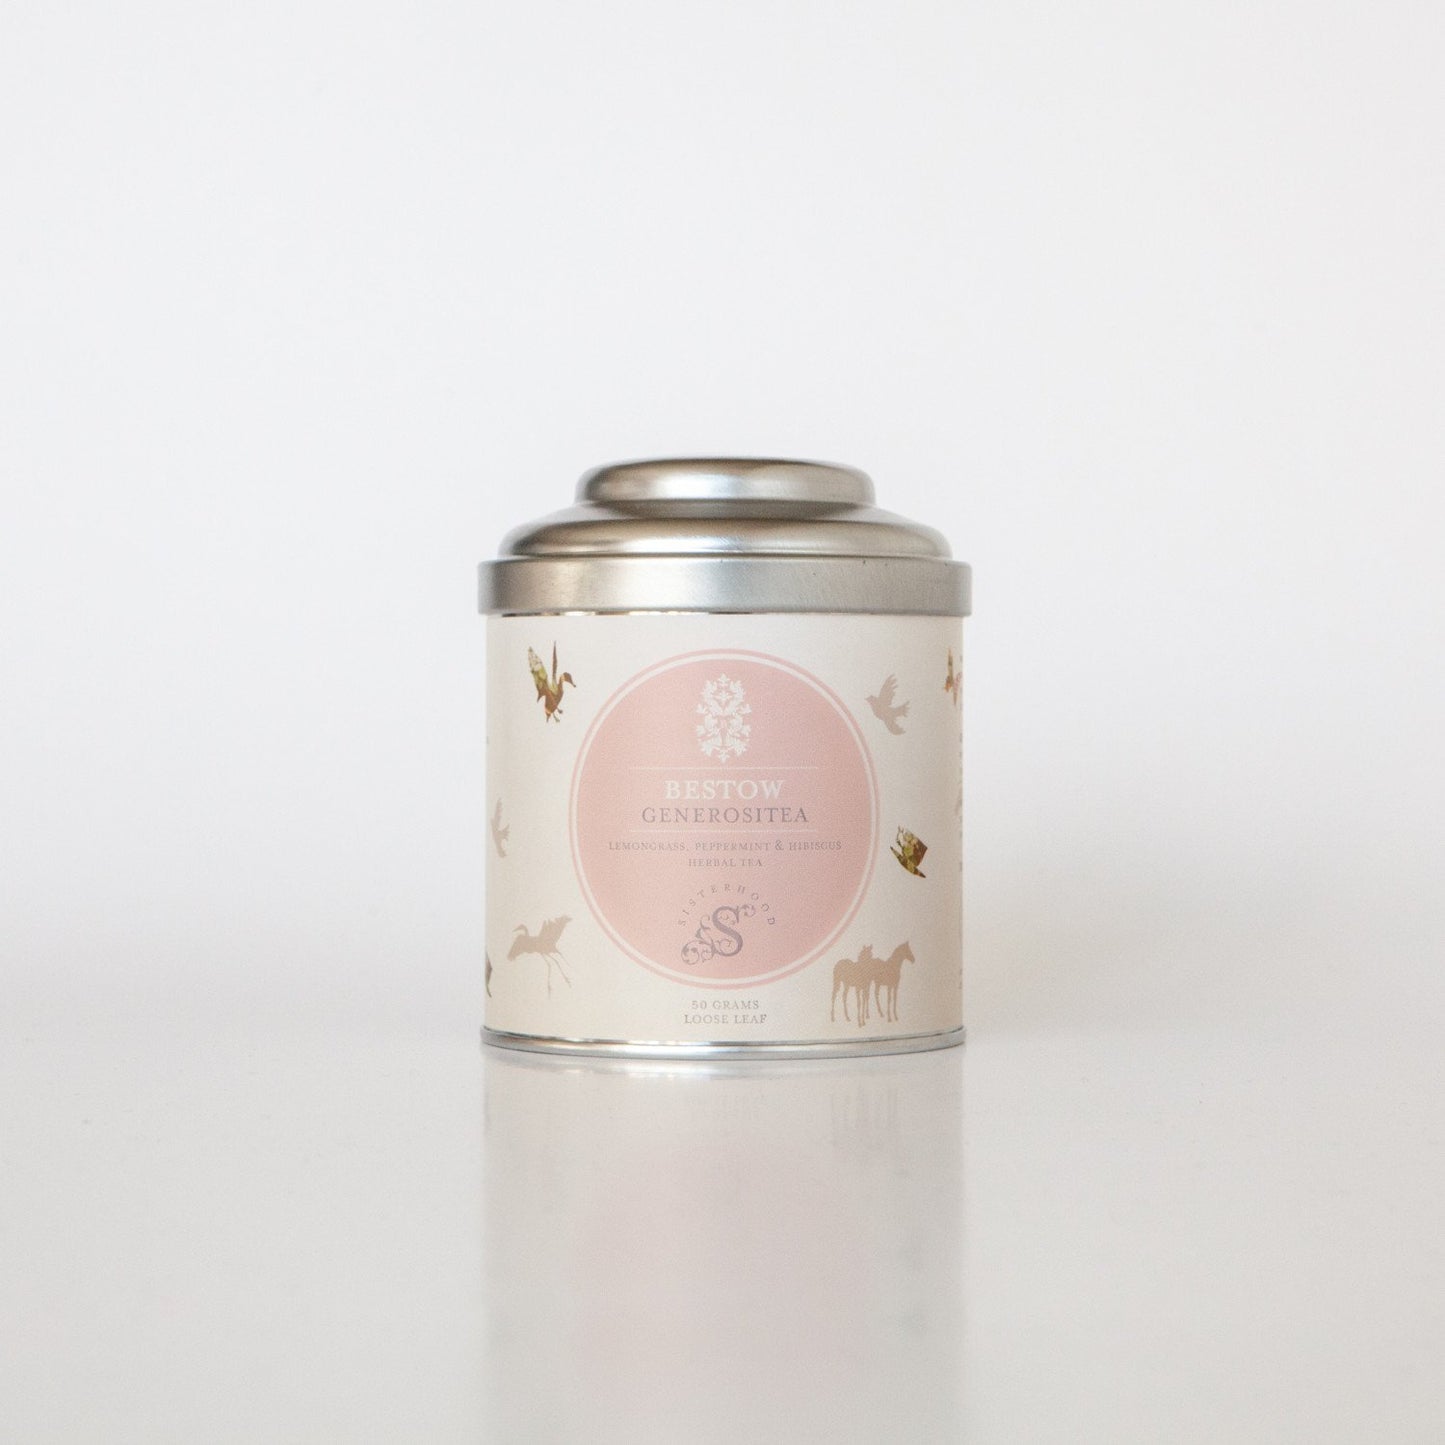 Bestow Generositea Organic Herbal Tea Tin